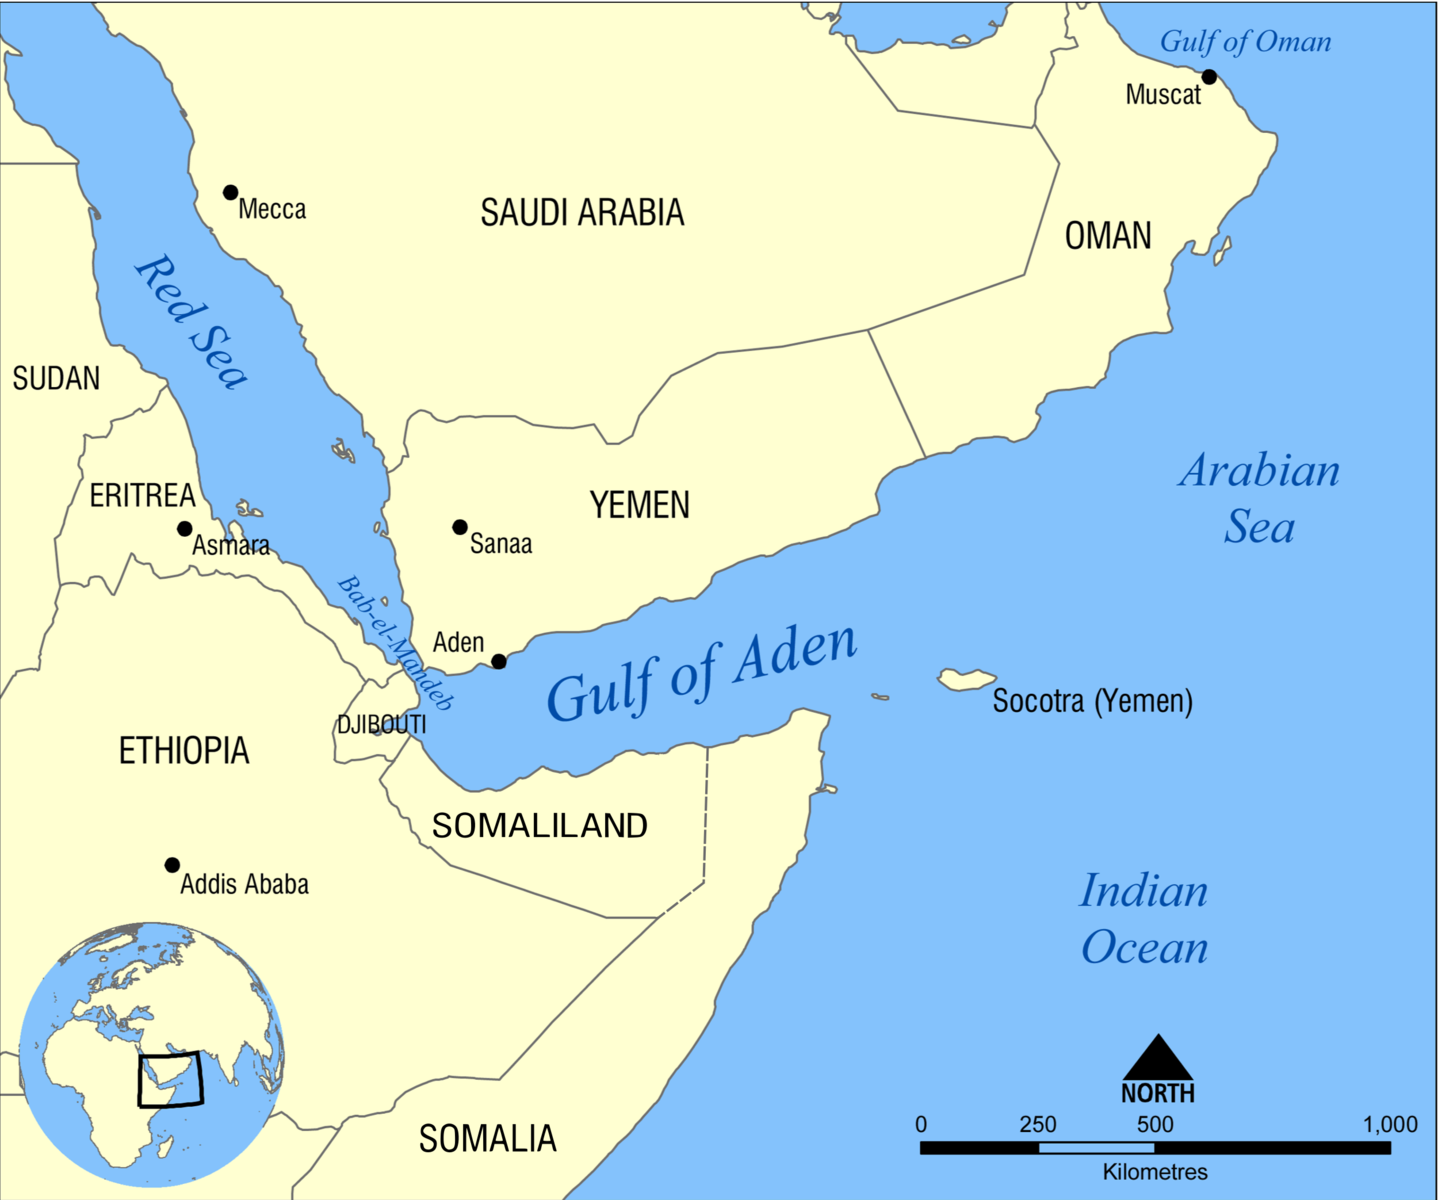 Gulf of Aden